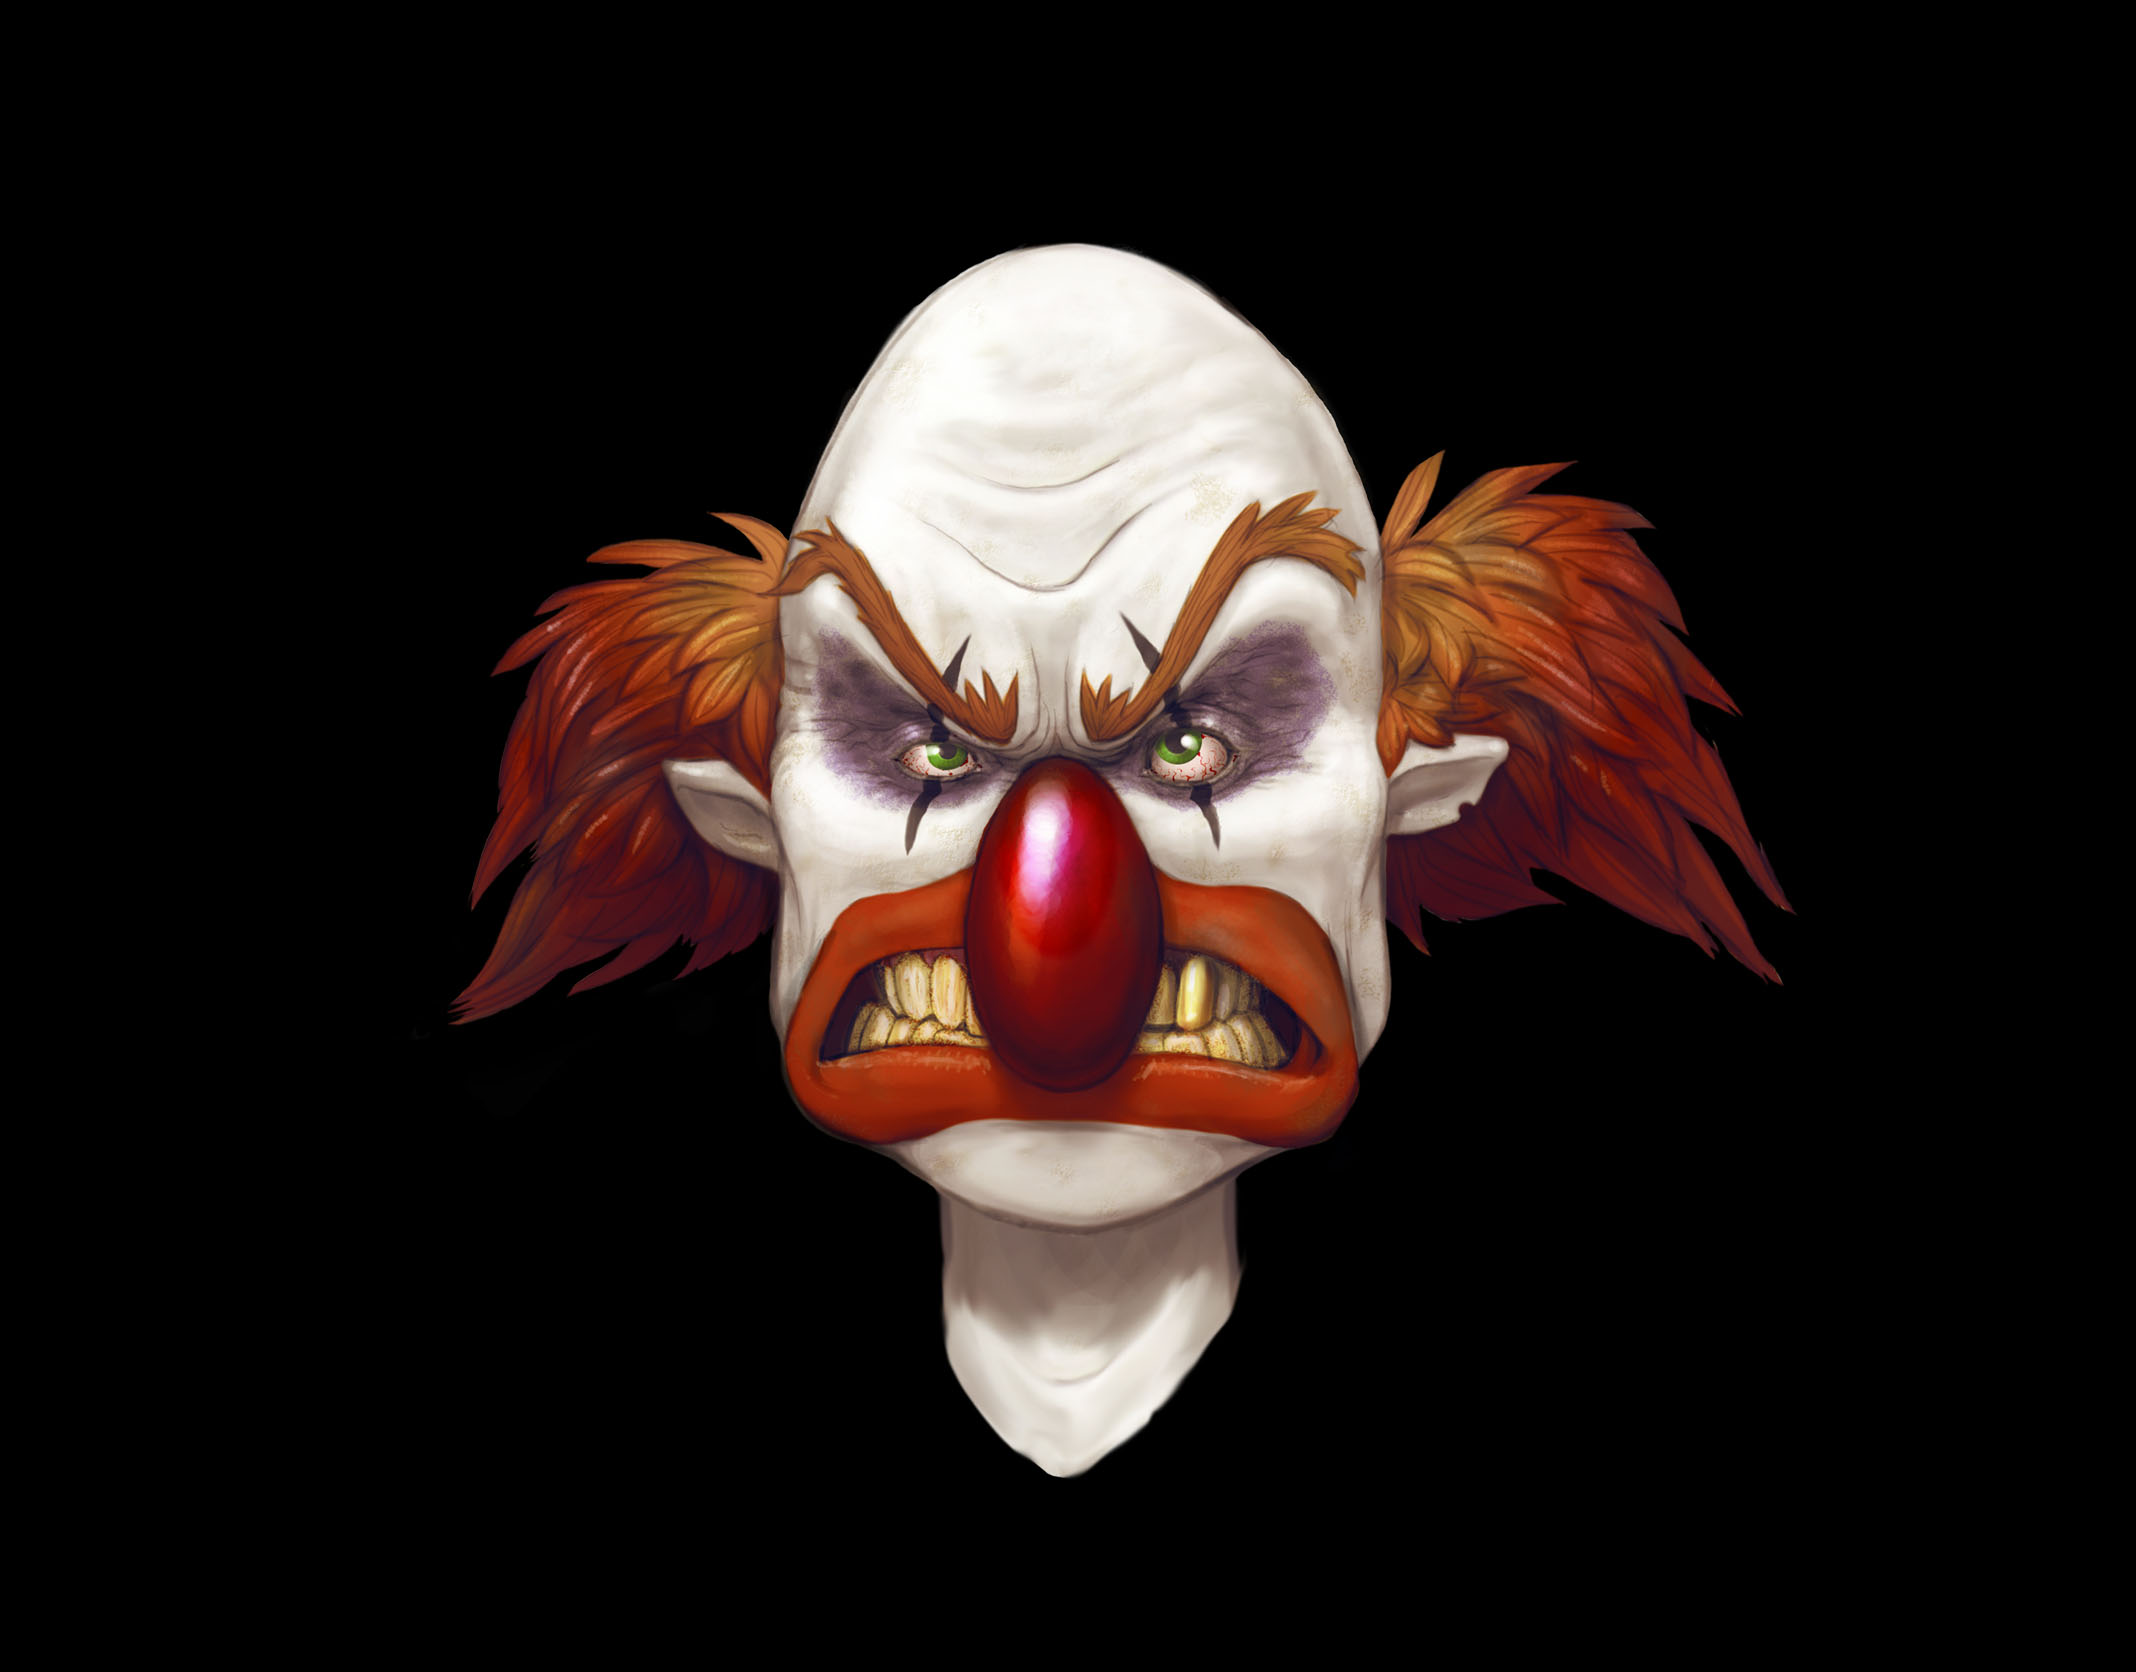 Dark Clown 2136x1672